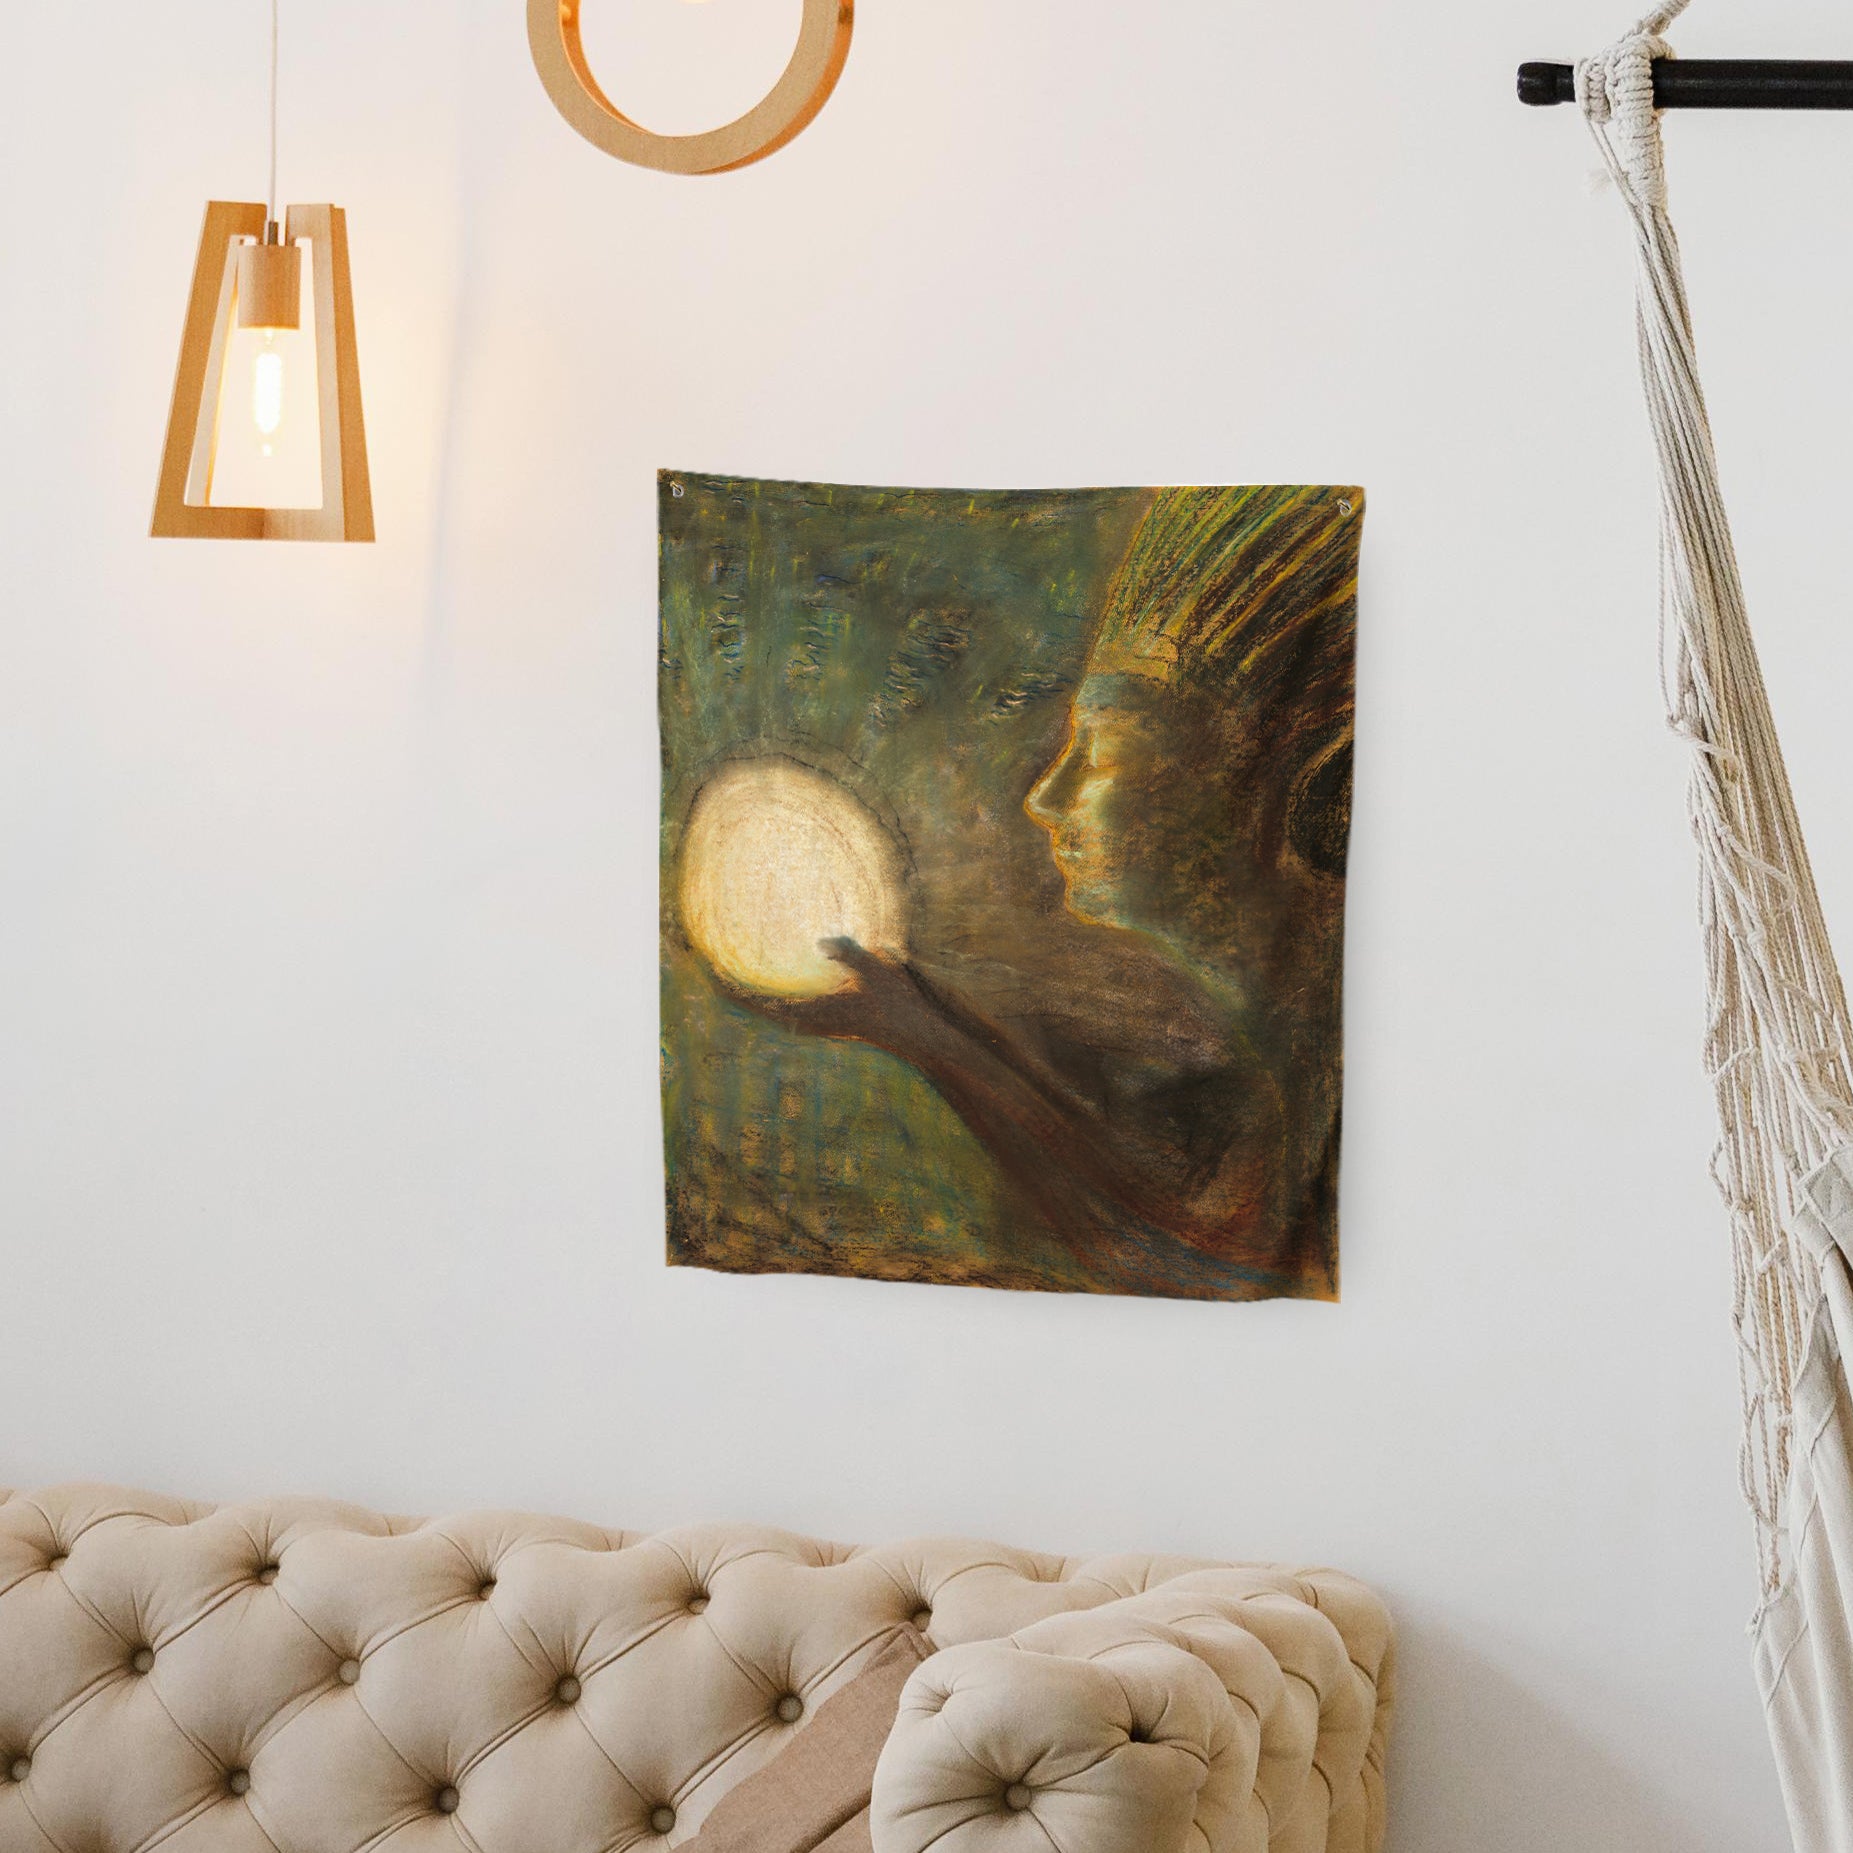 Sienos dekoracija gobelenas M. K. Čiurlionis "Bičiulystė"